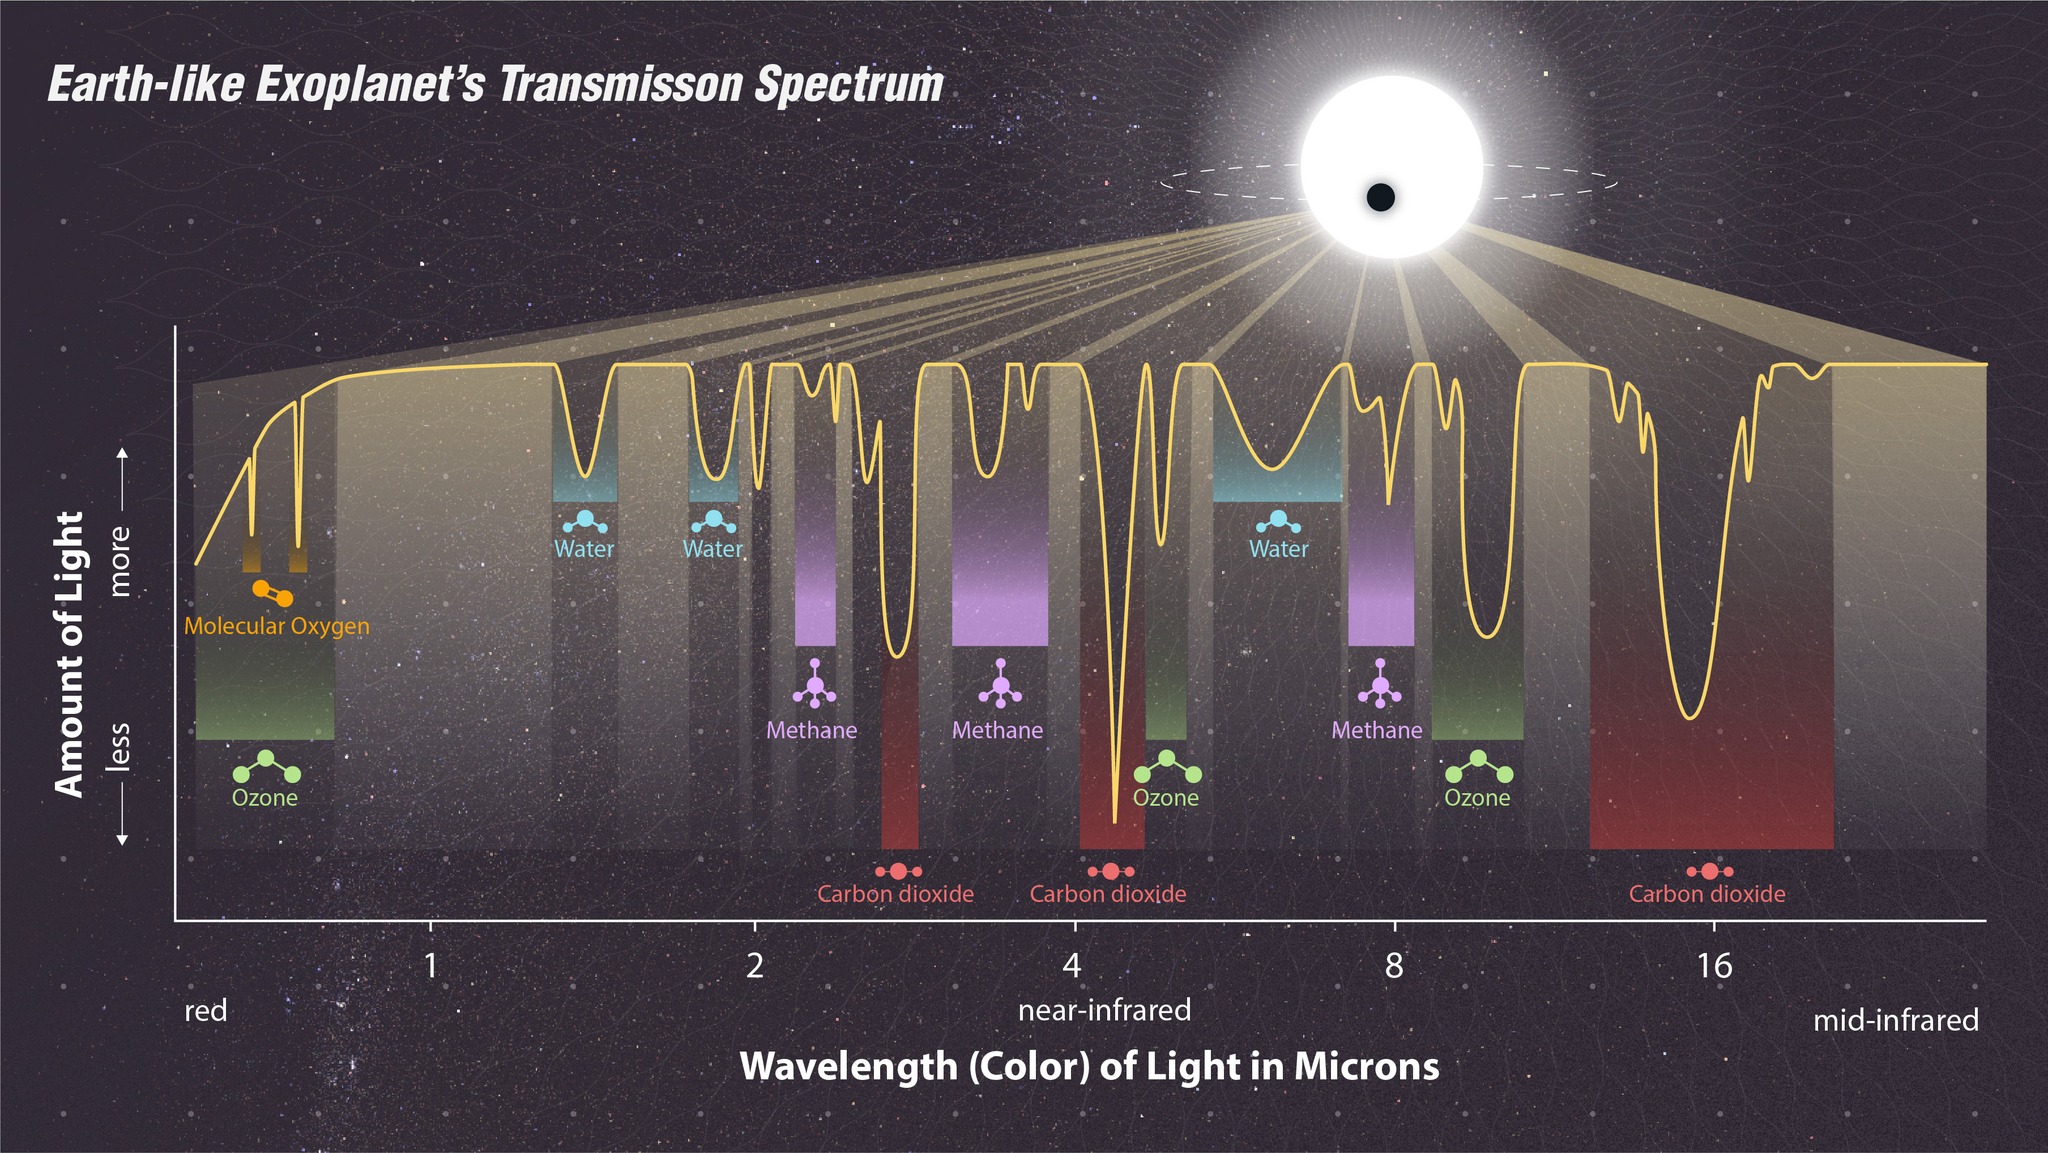 模拟系外行星的透射光谱，显示出水分子(water)、二氧化碳(carbon dioxide)、甲烷(methane)及臭氧(ozone)吸收光的位置。天文学家透过分析系外行星的透射光谱，找出其大气层成分。                                          图片鸣谢: NASA, ESA, CSA, STScI, Joseph Olmsted (STScI)